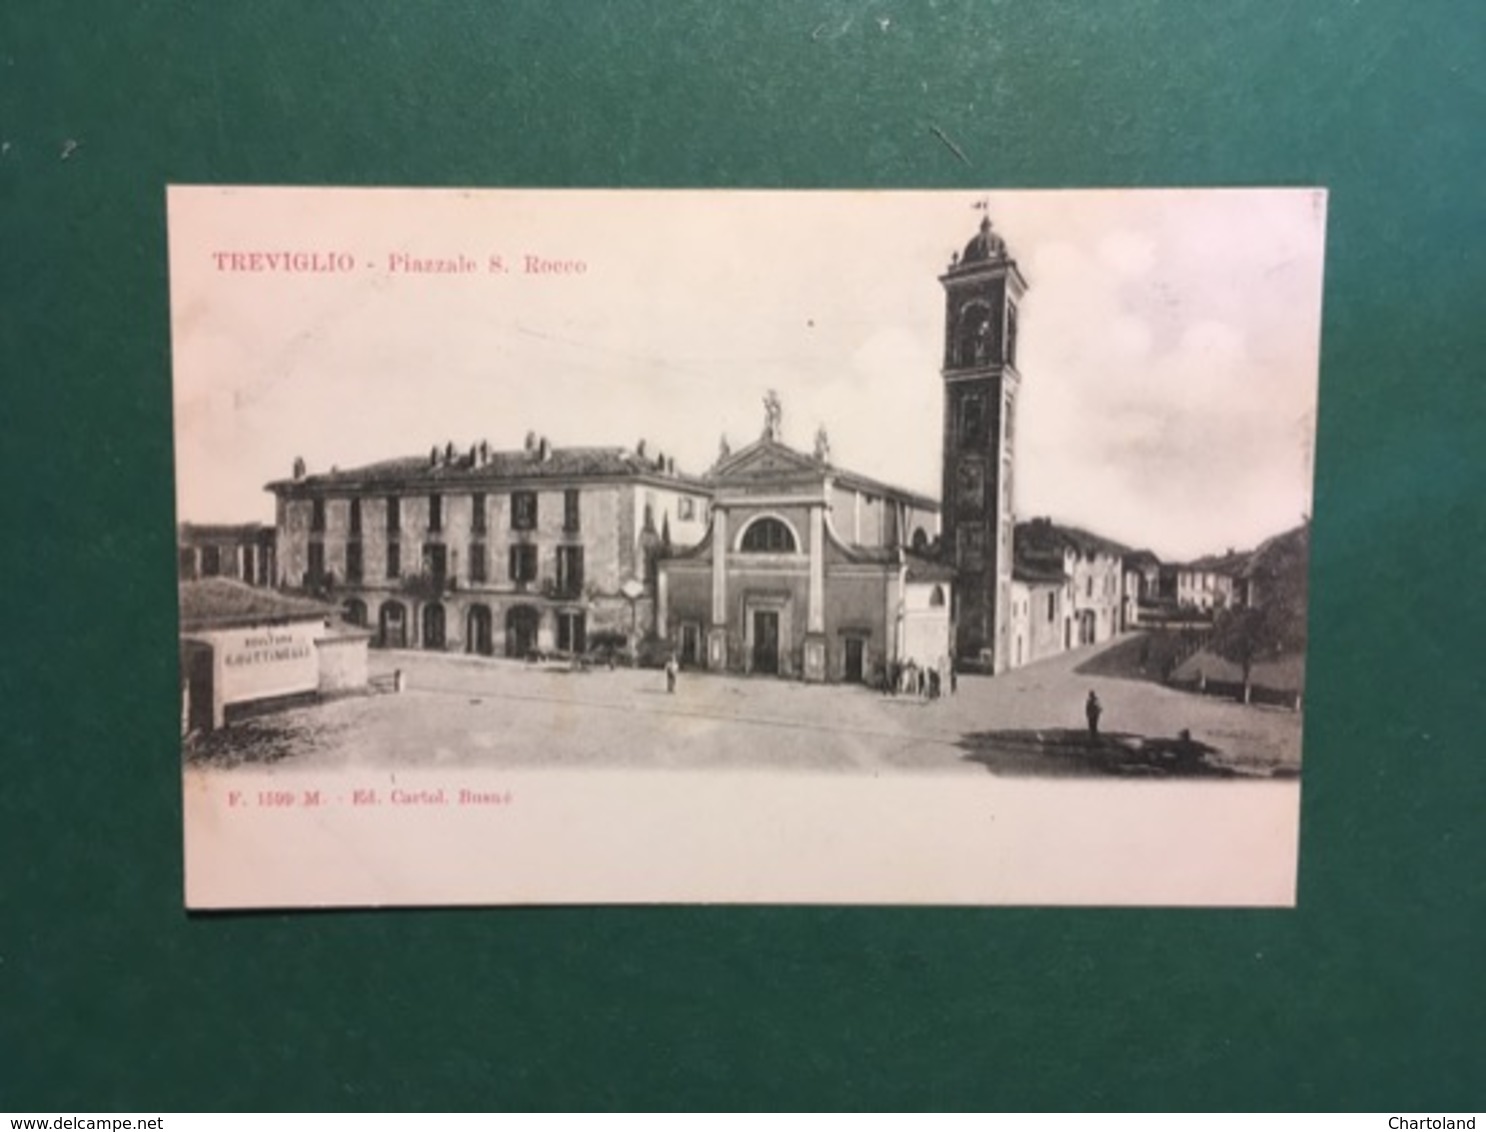 Cartolina Treviglio - Piazzale S. Rocco - 1900 Ca. - Bergamo